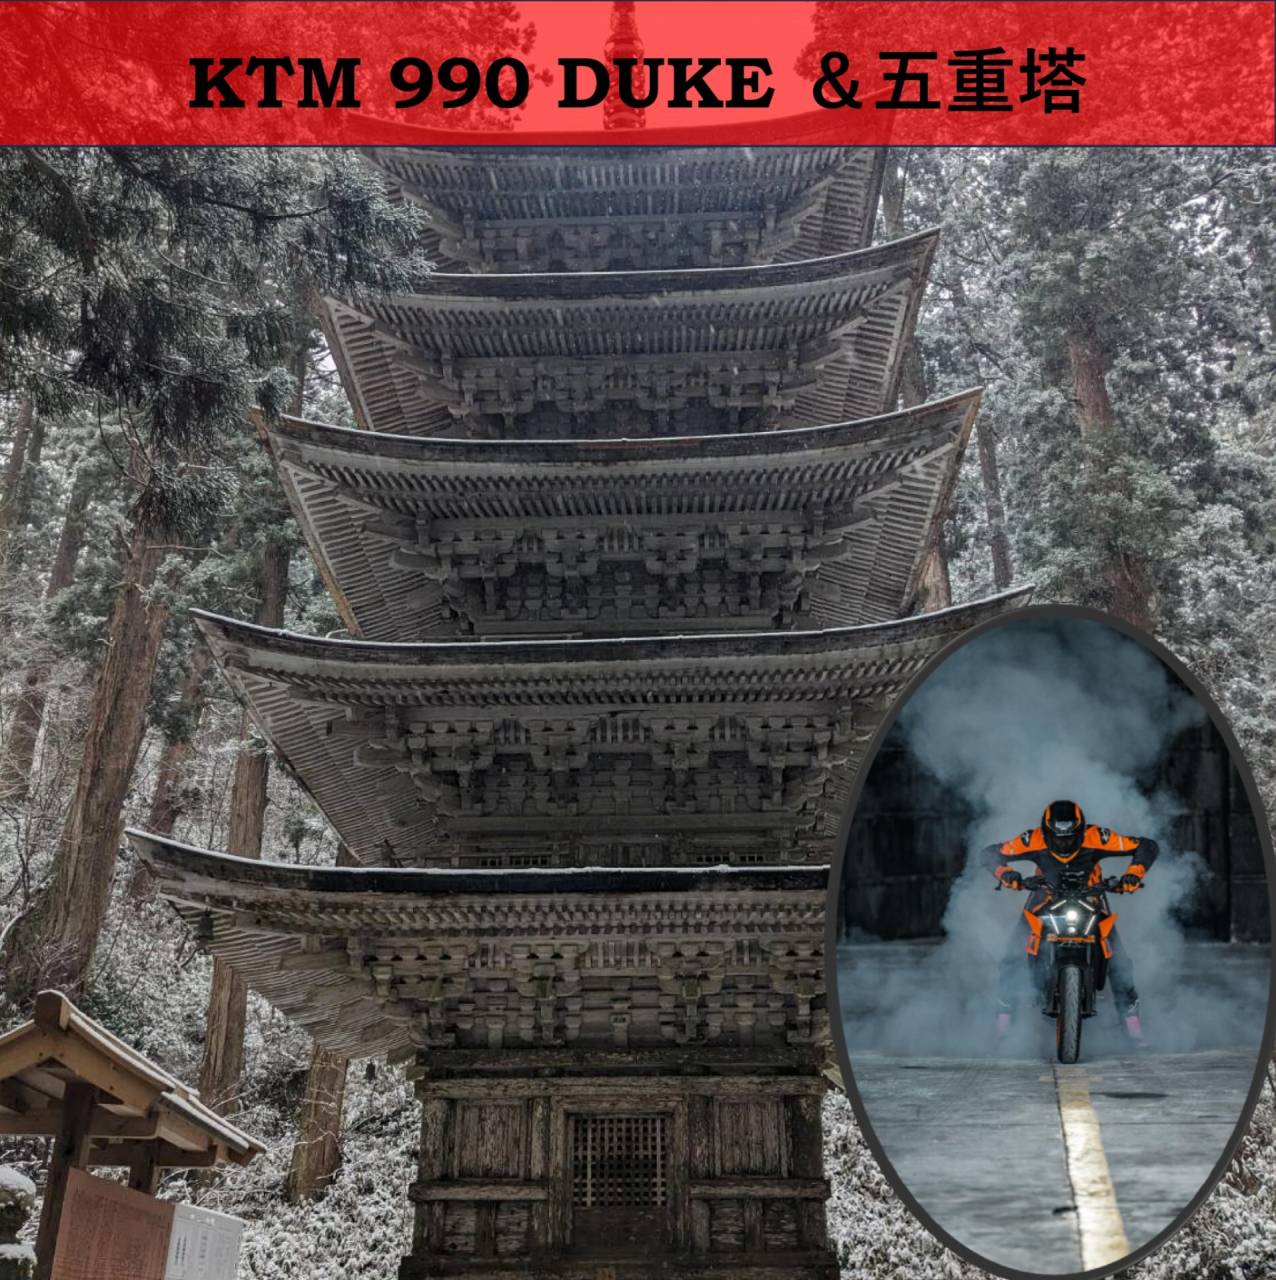 KTM 990 DUKE は五重塔 KTM 山形